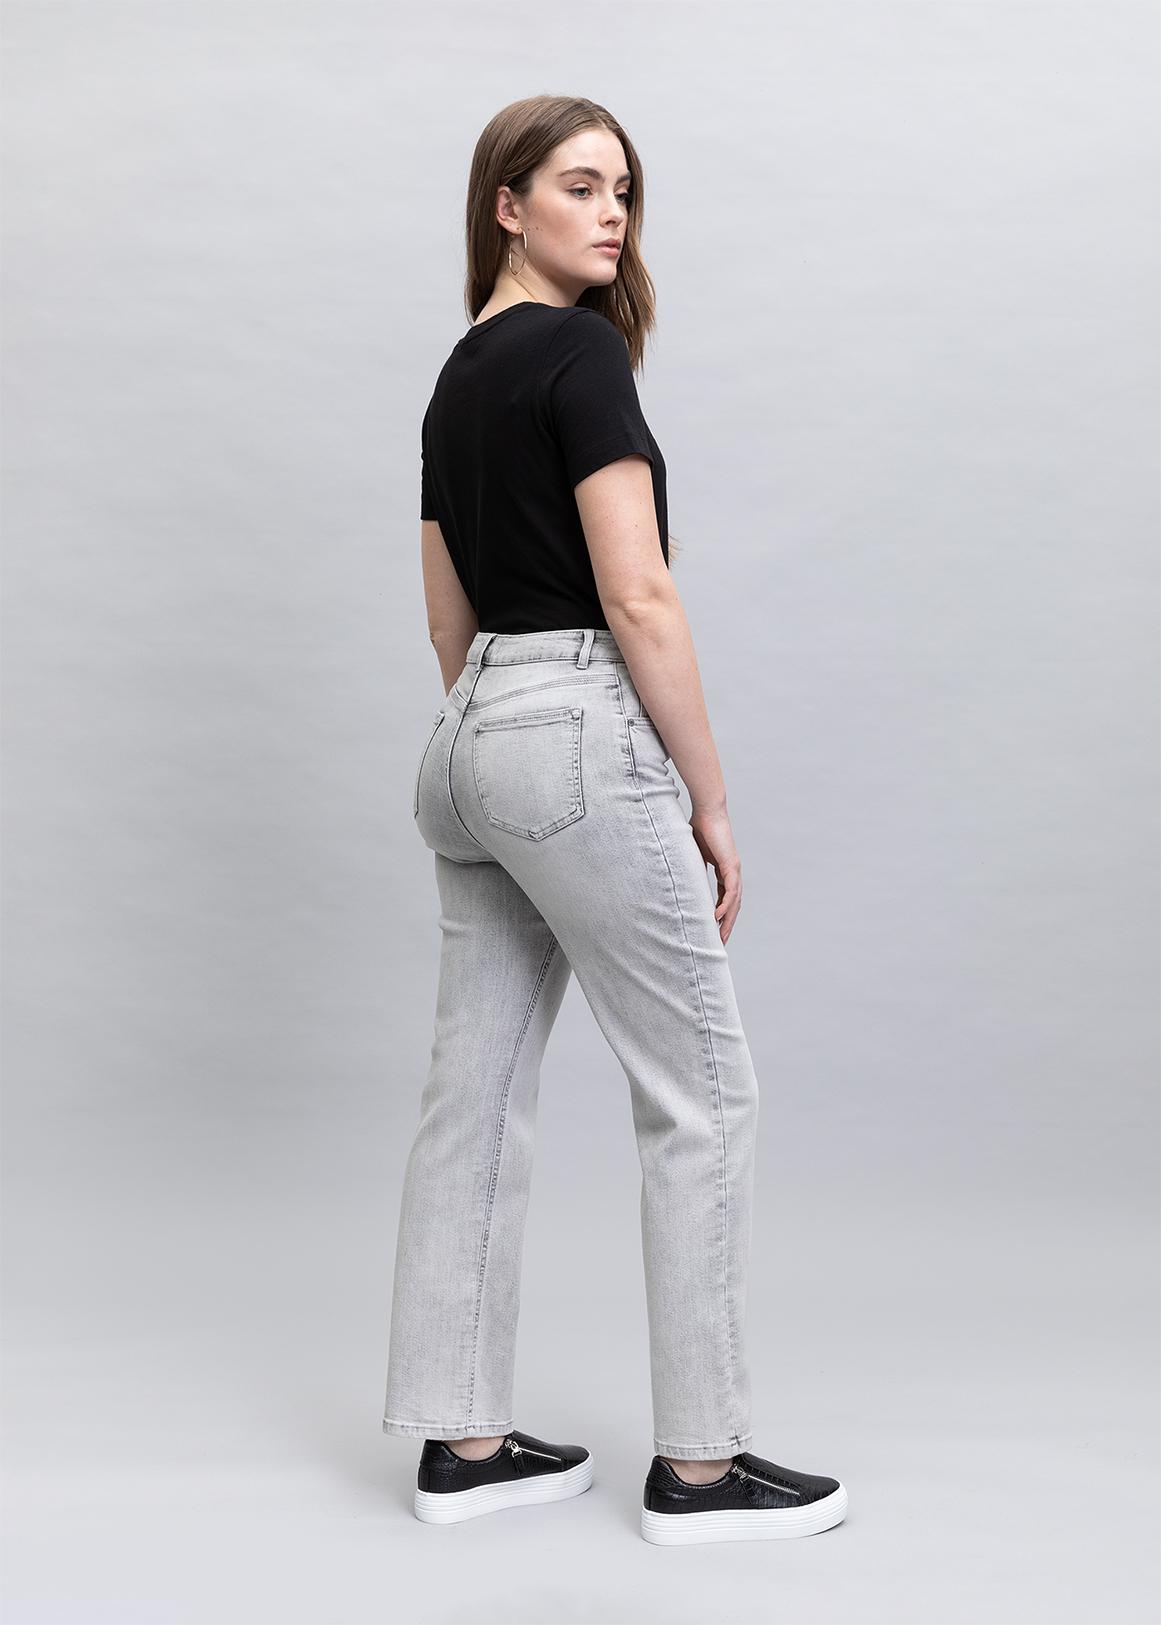 https://assets.woolworthsstatic.co.za/Ultra-High-Rise-Curvy-Straight-Leg-Jeans-LIGHT-GREY-506901294-back.jpg?V=lVpW&o=eyJidWNrZXQiOiJ3dy1vbmxpbmUtaW1hZ2UtcmVzaXplIiwia2V5IjoiaW1hZ2VzL2VsYXN0aWNlcmEvcHJvZHVjdHMvYWx0ZXJuYXRlLzIwMjMtMDYtMjkvNTA2OTAxMjk0X0xJR0hUR1JFWV9iYWNrLmpwZyJ9&q=75